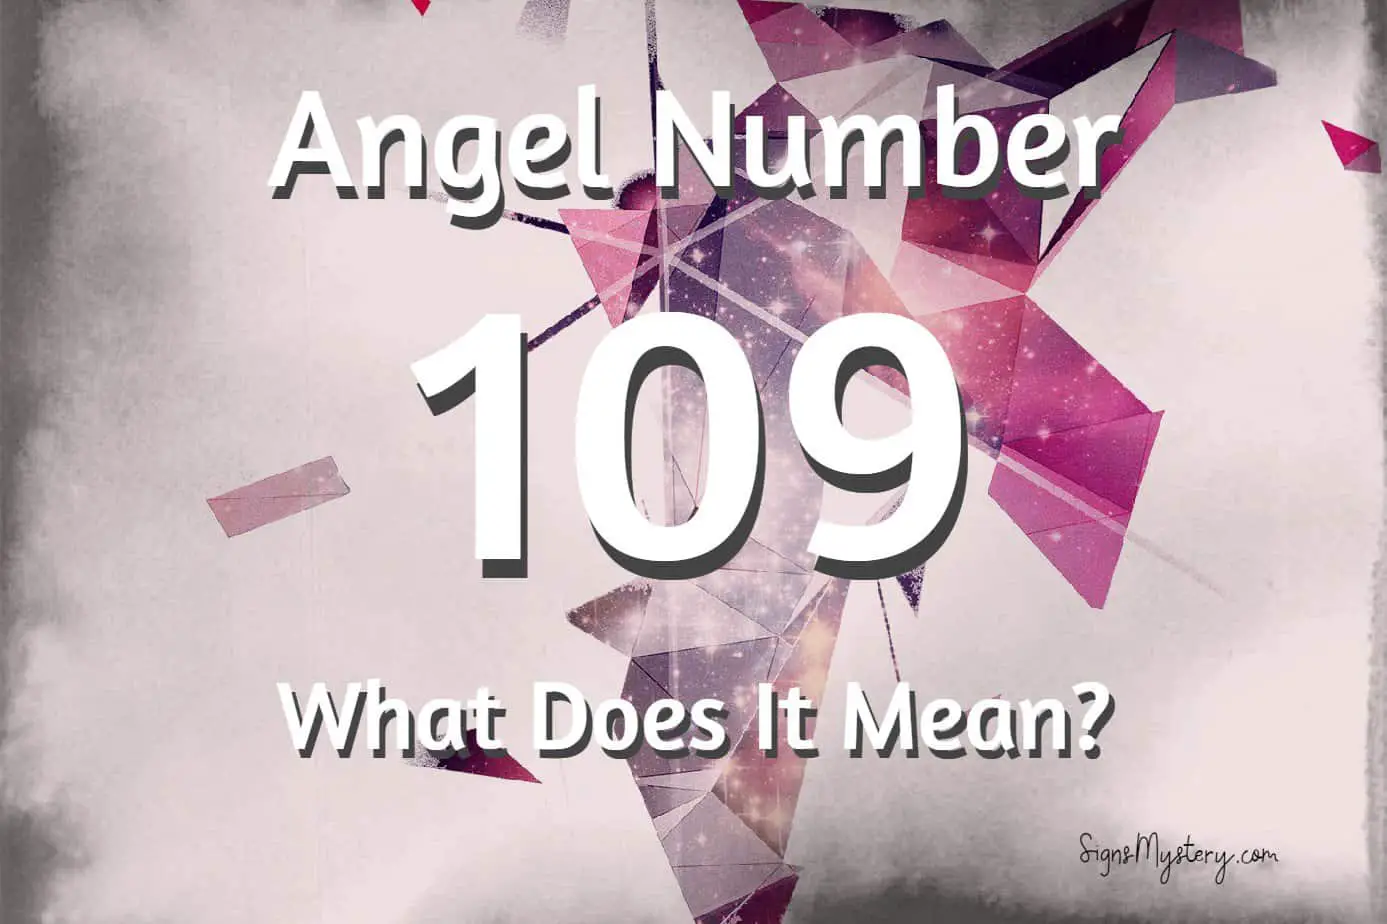 109 angel number